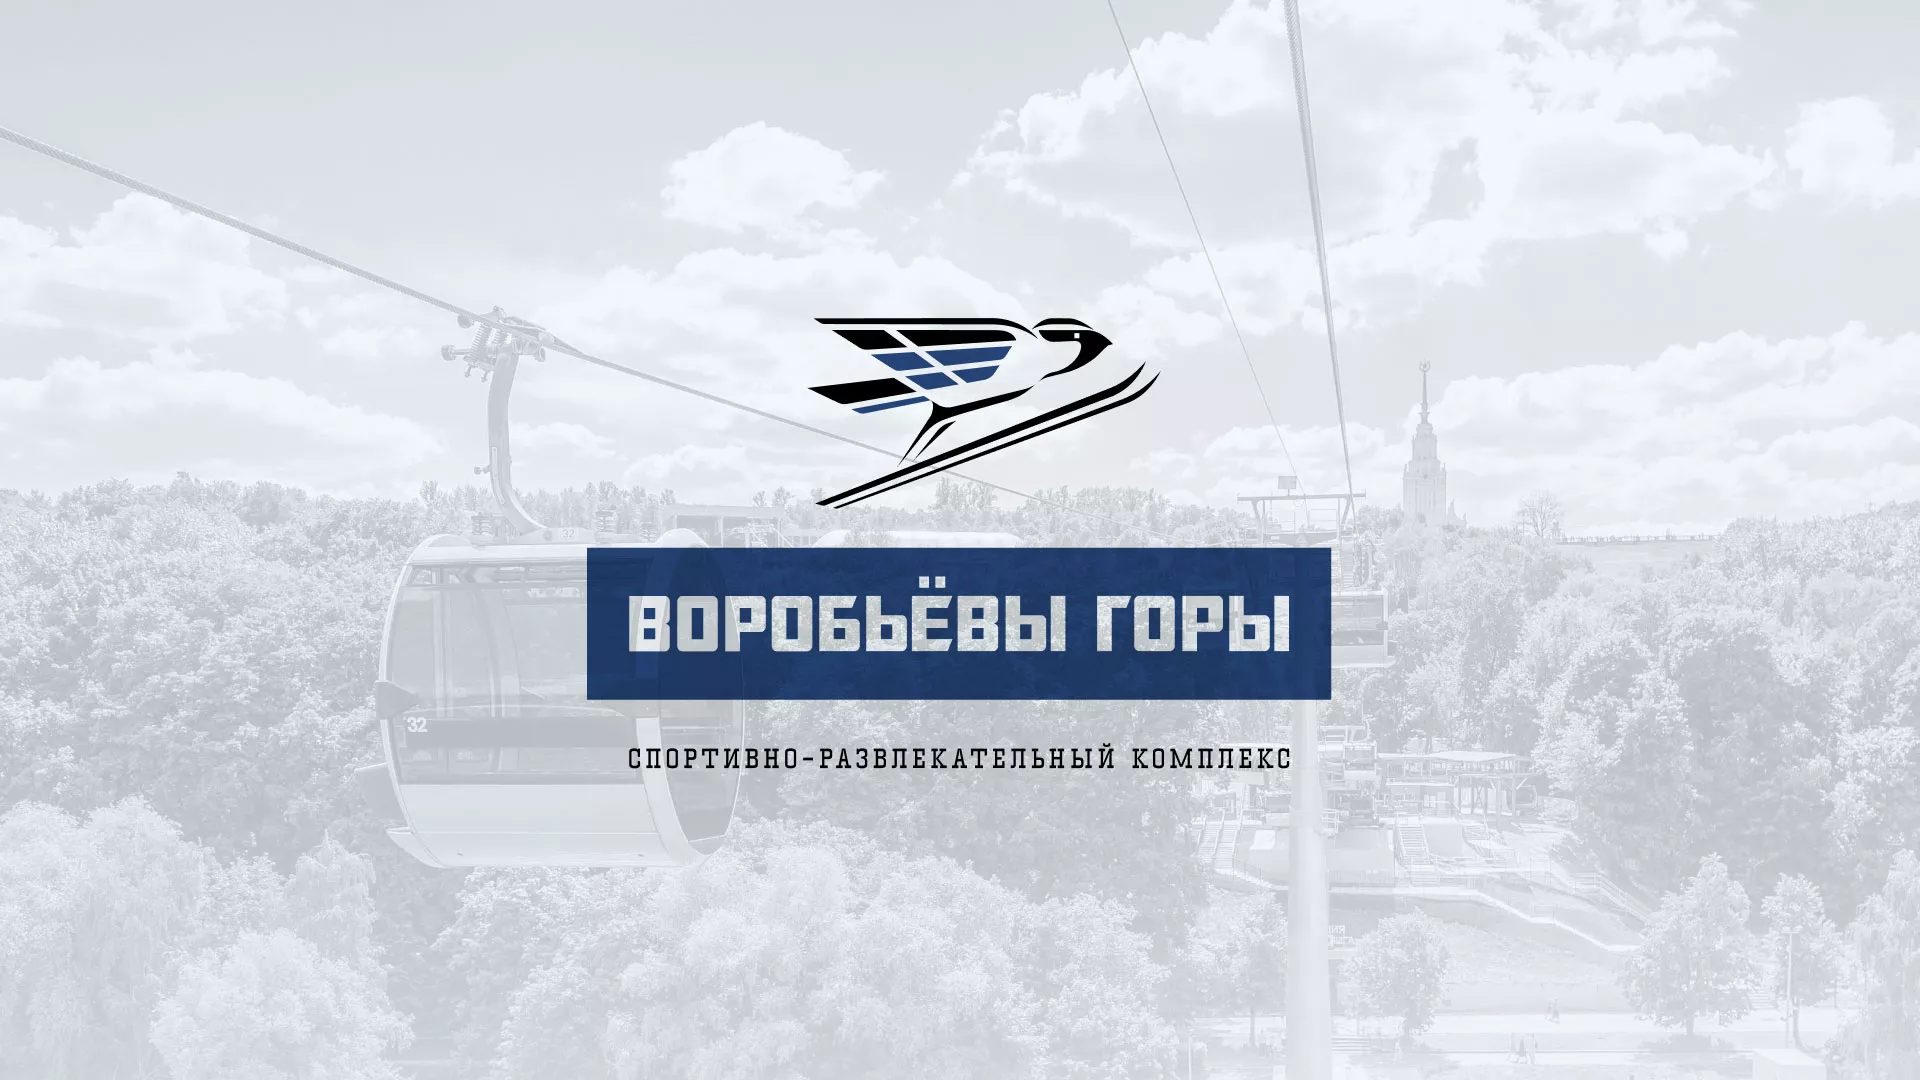 Разработка сайта в Кирсанове для спортивно-развлекательного комплекса «Воробьёвы горы»